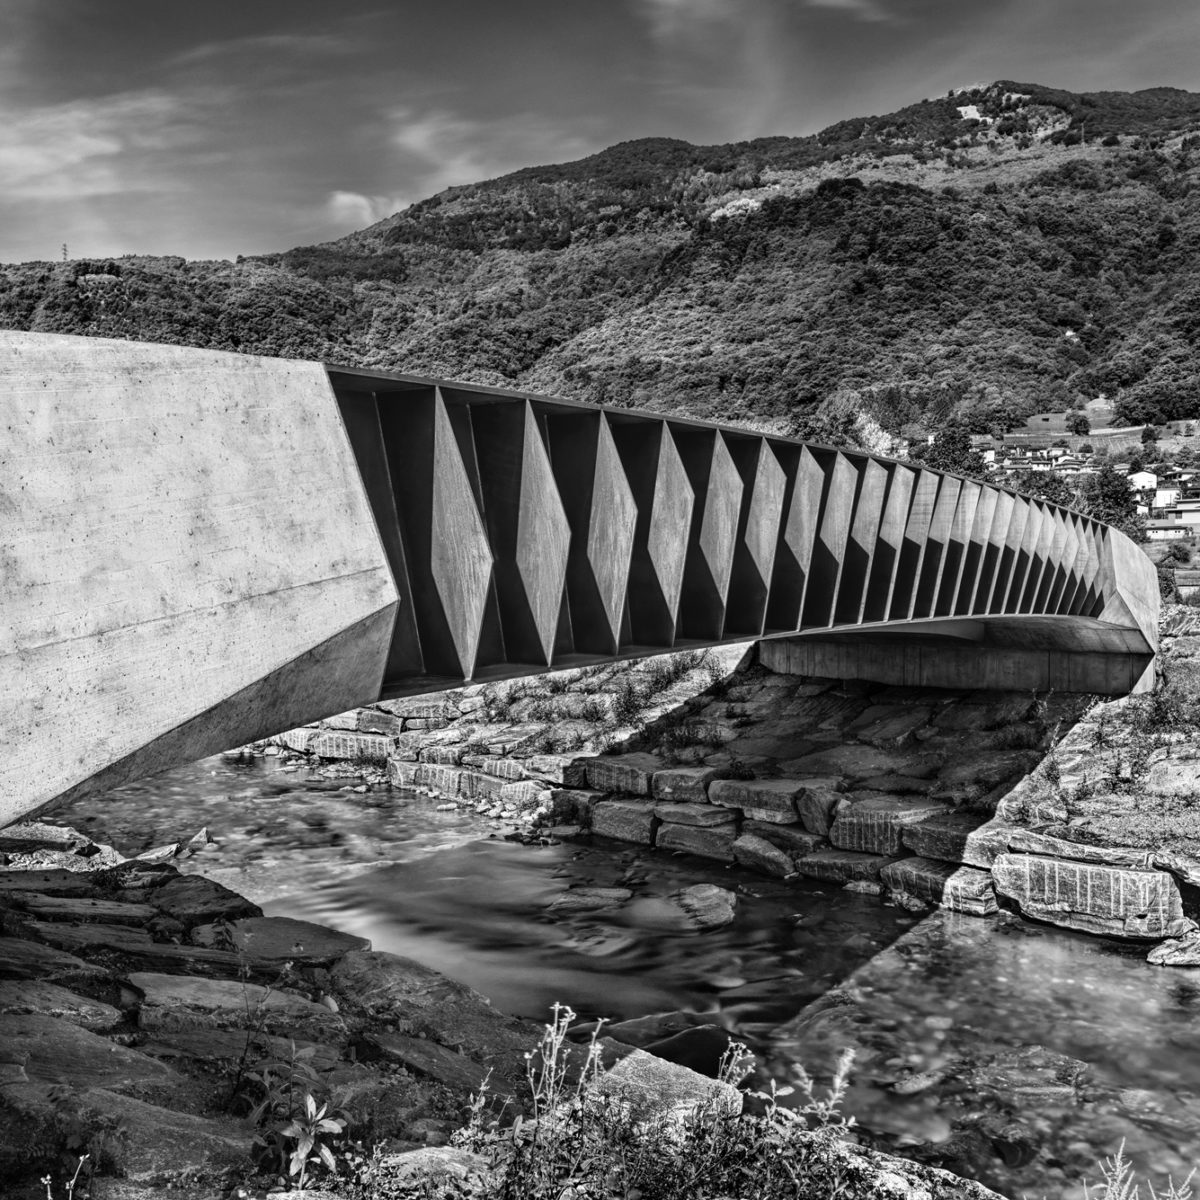 Rifacimento del ponte tra le due sponde, del Vedeggio lungo via Industria Torricella-Taverne